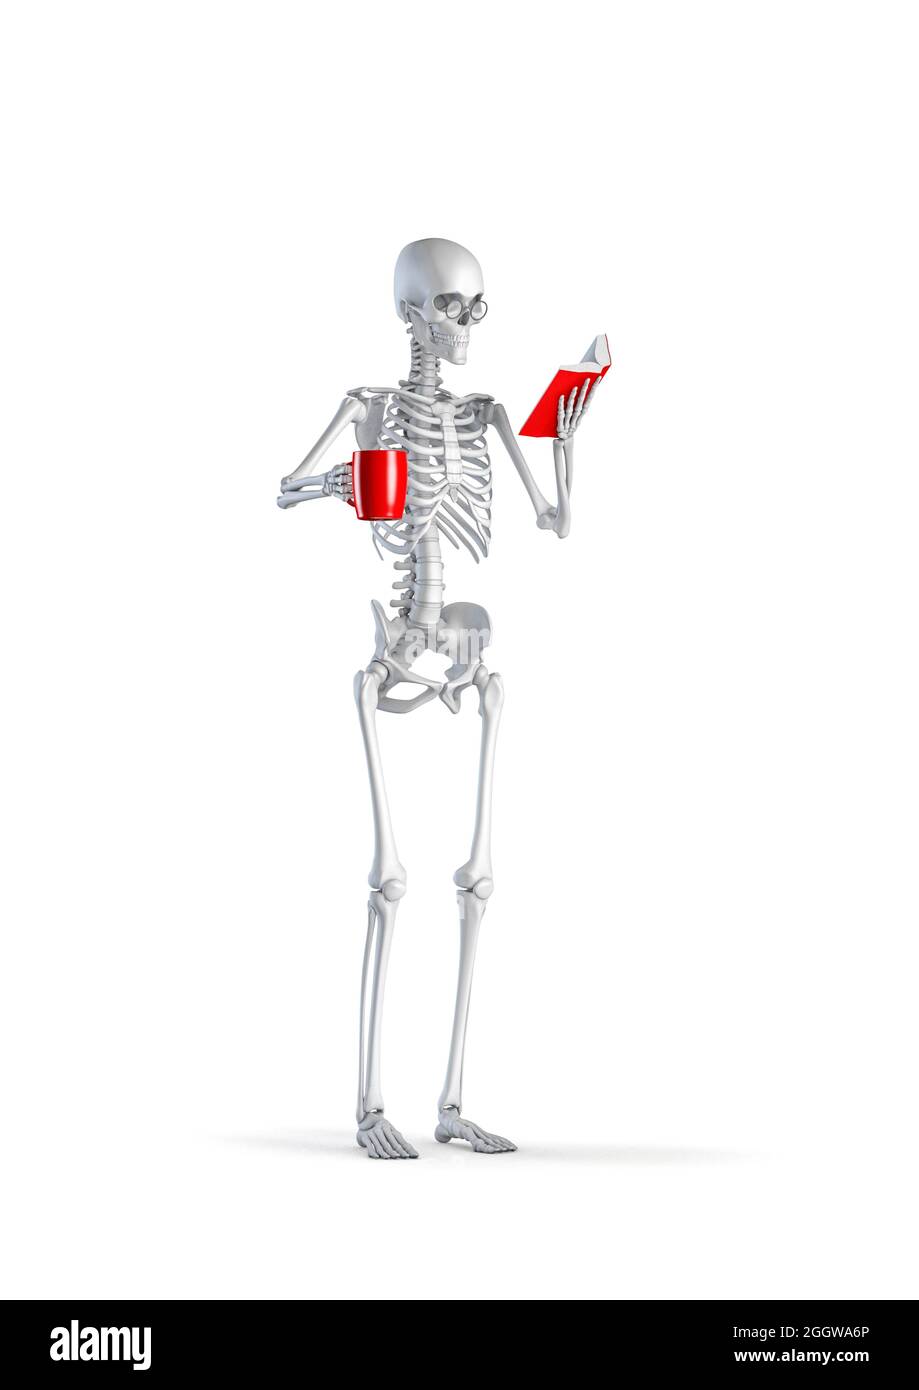 Scheletro del lettore di libri - illustrazione 3D di figura di scheletro umano femminile che indossa occhiali lettura libro e tenendo la tazza di caffè rosso isolato su bianco Foto Stock